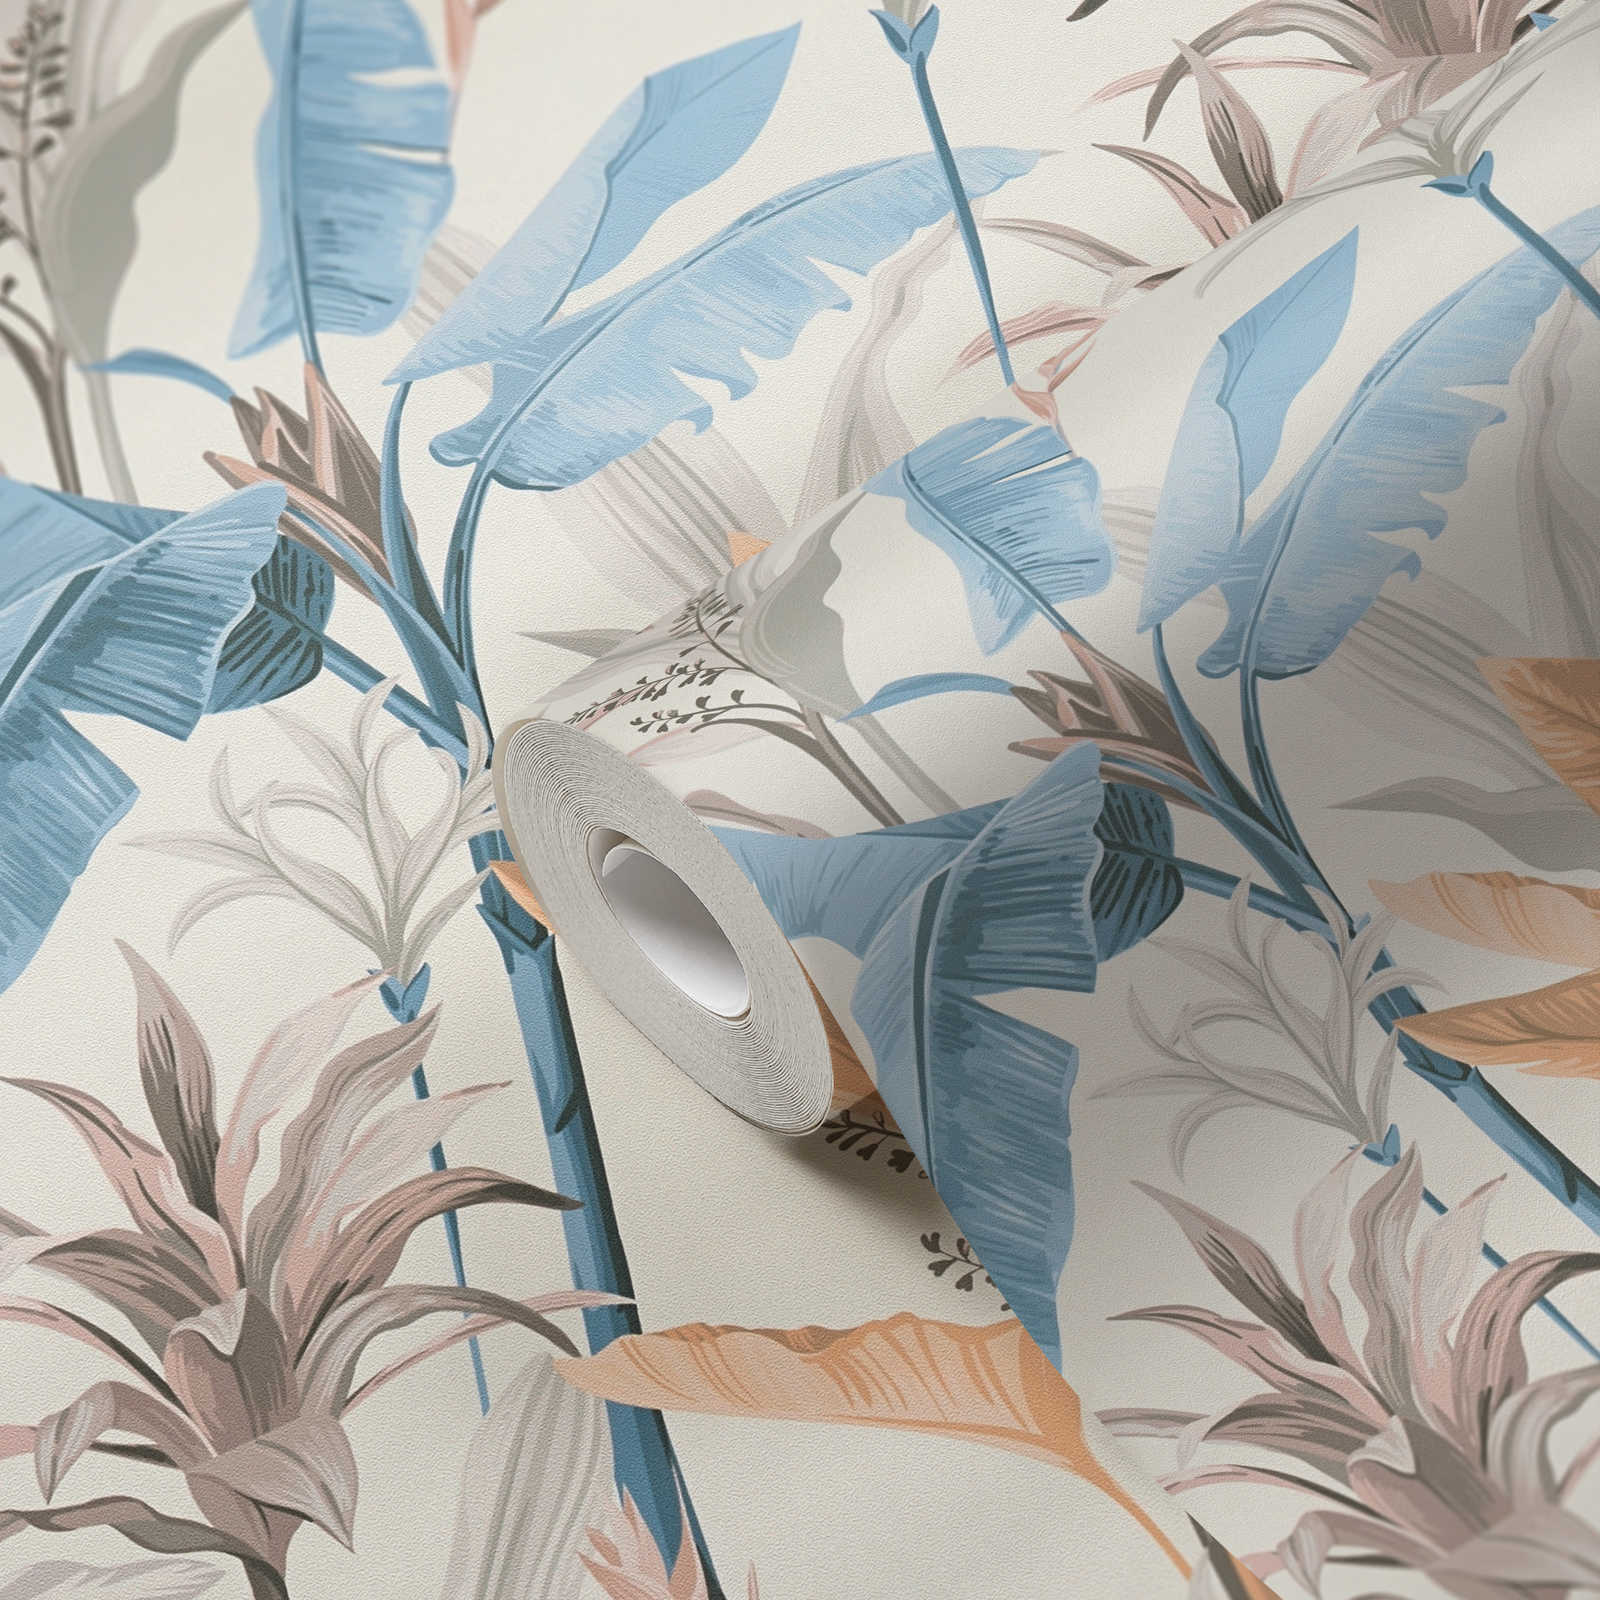             Detaillierte florale Vliestapete mit Blätter Muster - Blau, Grau, Creme
        